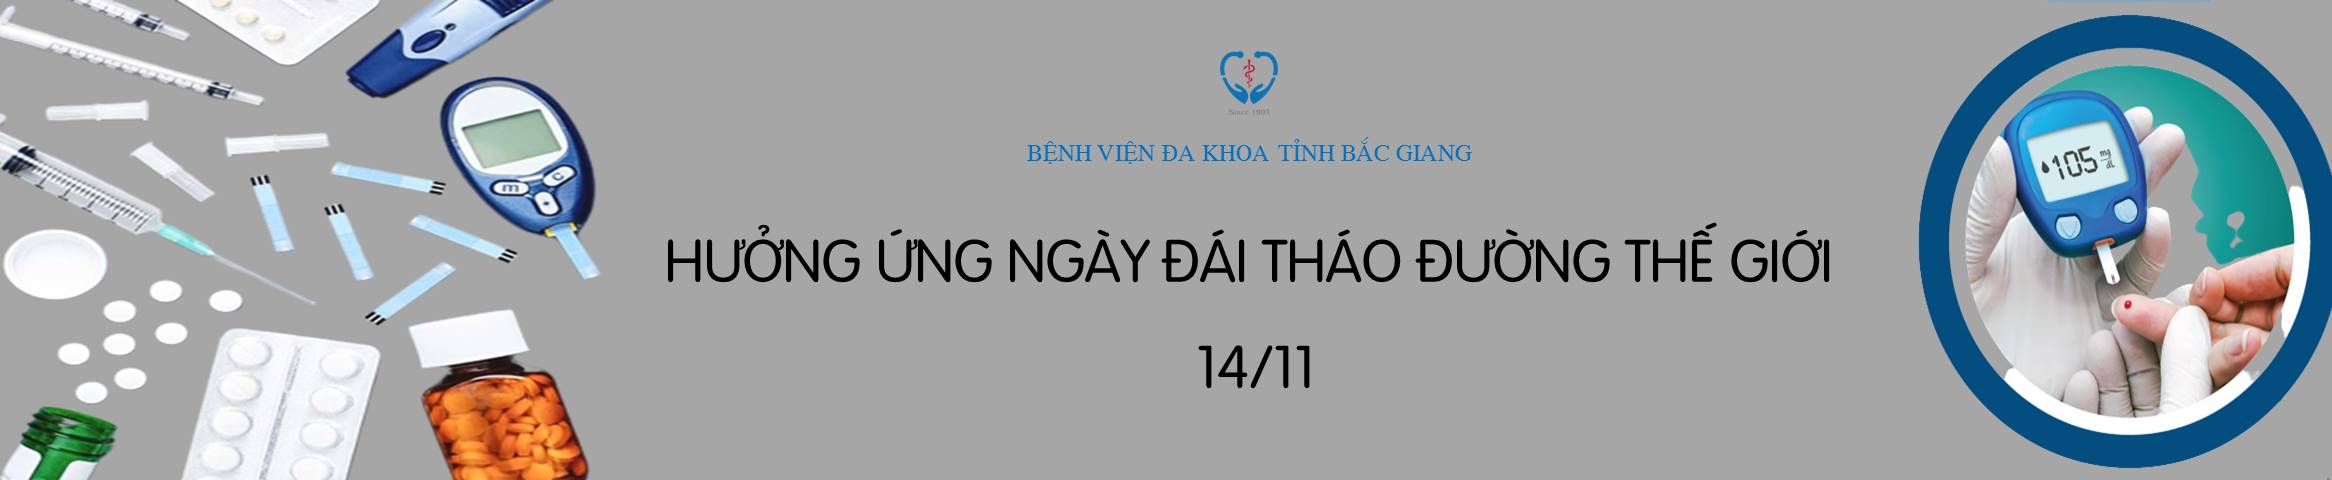 HUONG_UNG_NGAY_DAI_THAO_DUONG_THE_GIOI_4569365013